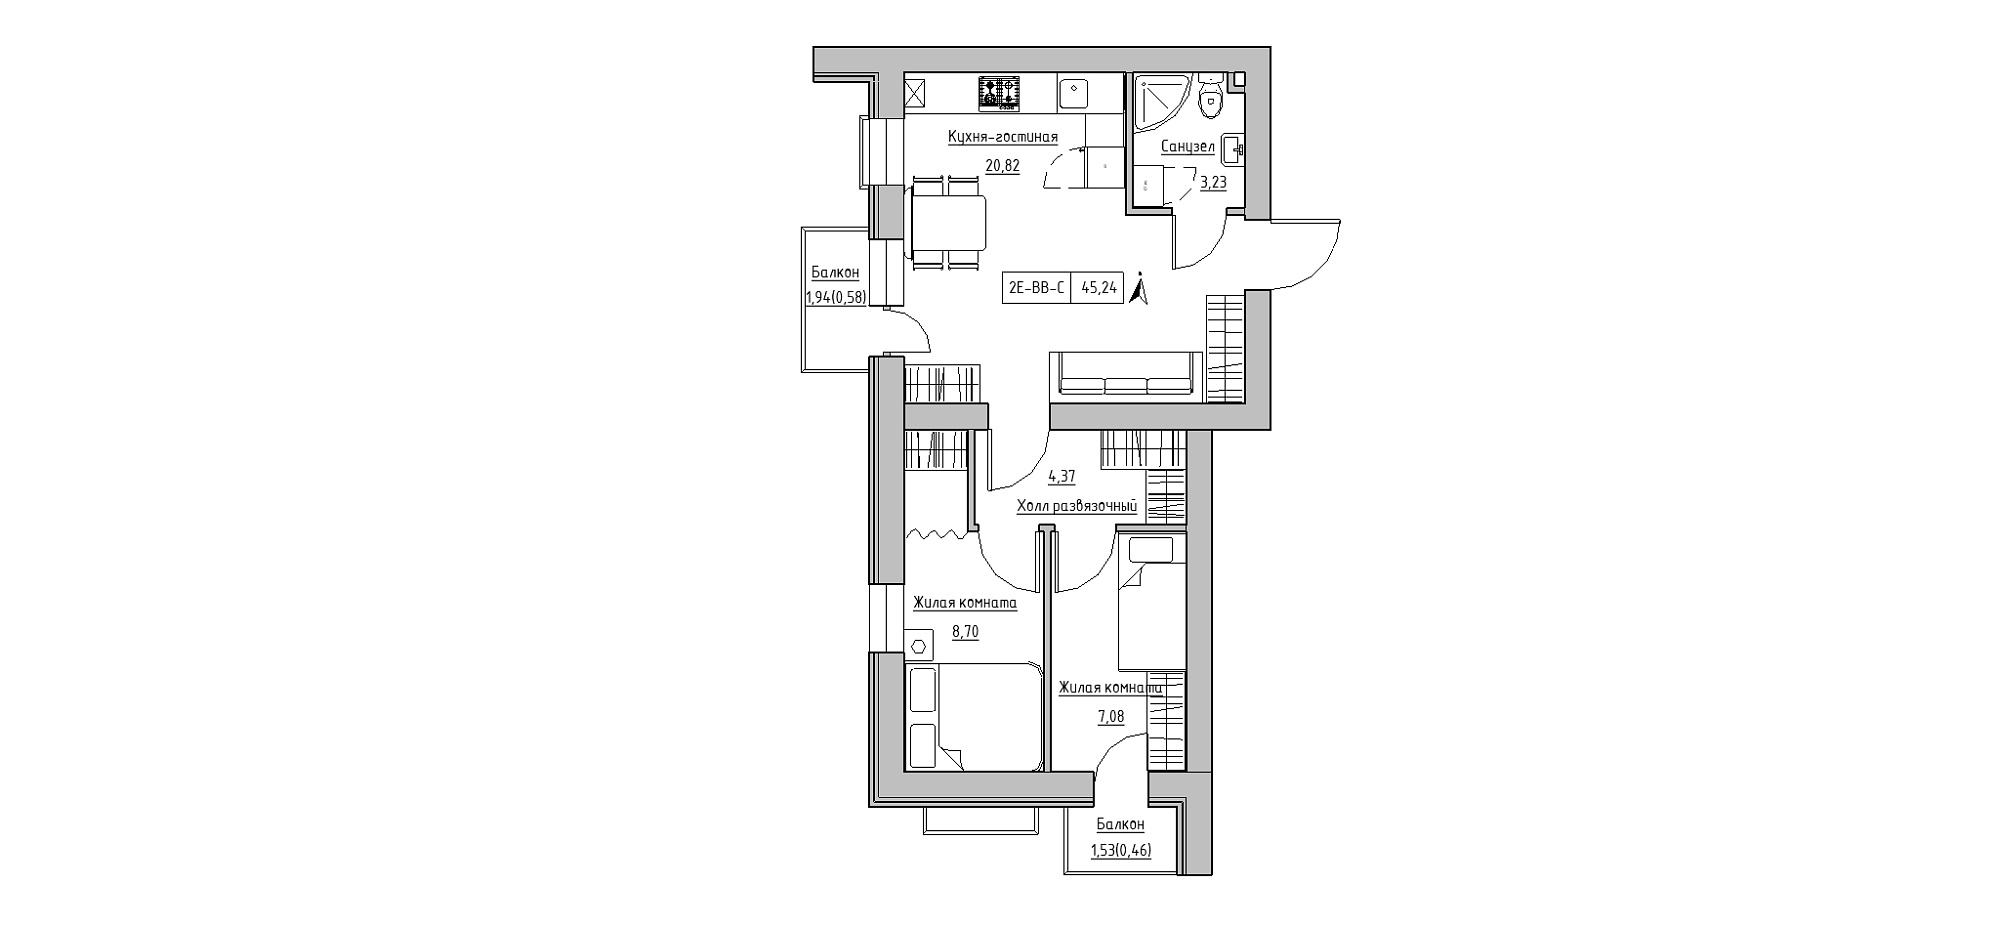 Планировка 2-к квартира площей 45.24м2, KS-020-05/0011.